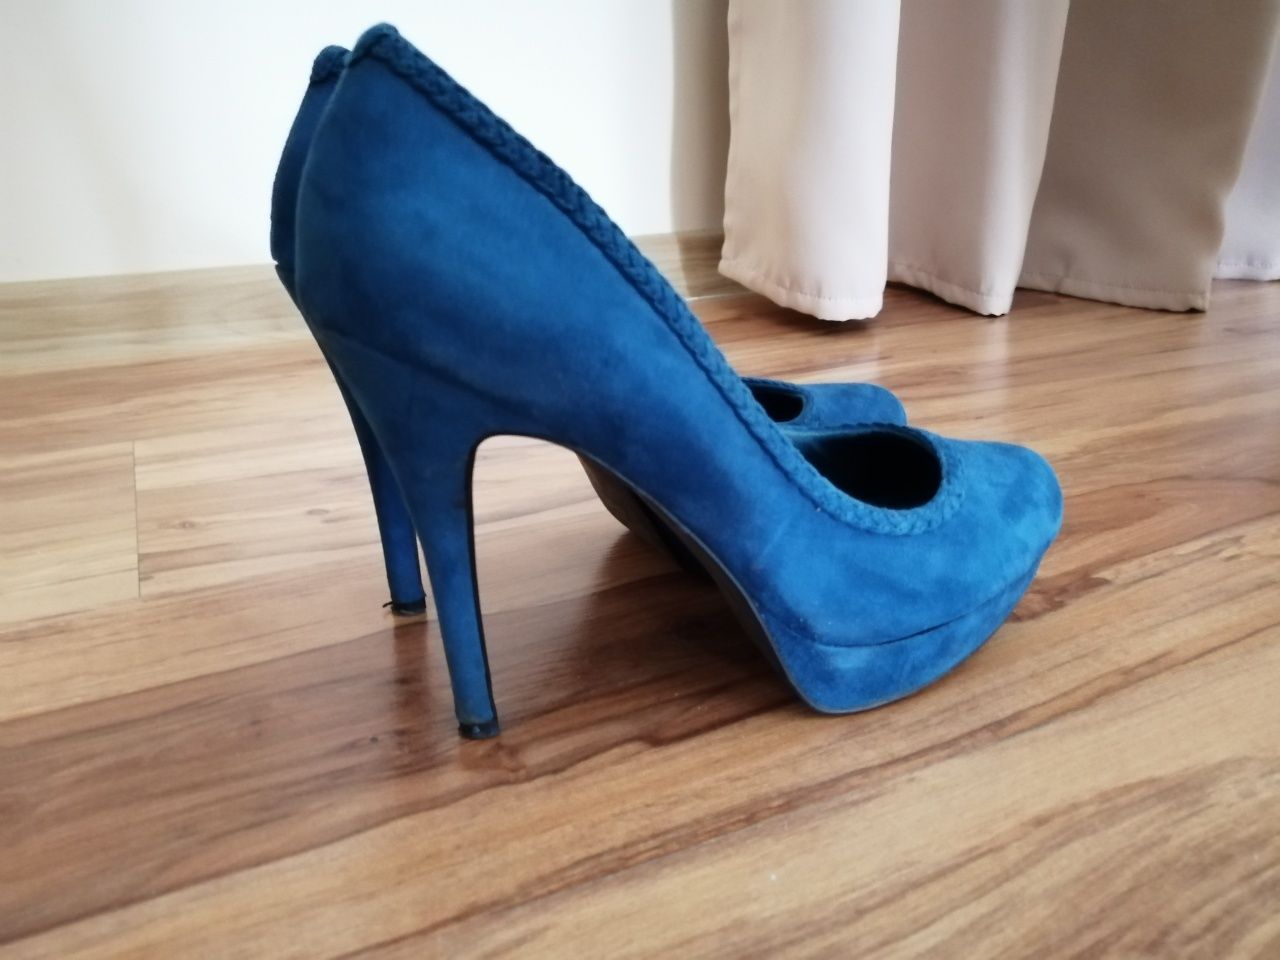 Szpilki niebieskie stradiwarius 39 buty na obcasie czułe ka piękne